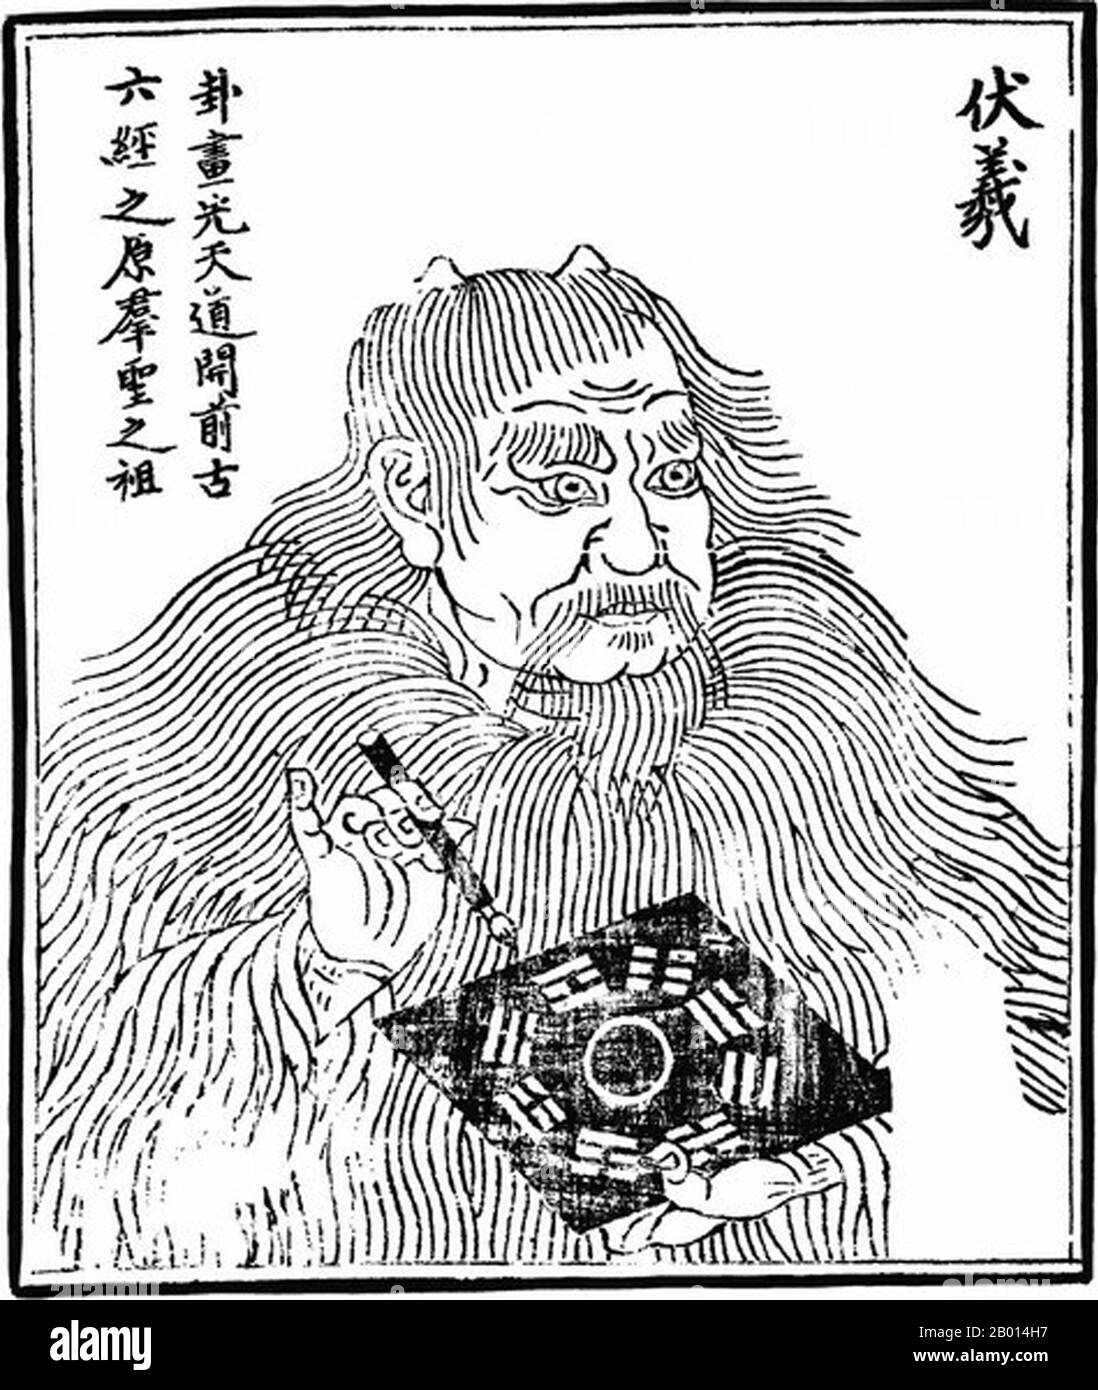 China: Souveräner Fuxi (Mitte des 29. Jahrhunderts v. Chr.), kultureller Held und Schöpfergottheit. Abbildung, c. 1498. Fu Xi oder Fu Hsi war der erste der drei Herrscher (Sanhuang) des alten China. Er ist ein Kulturheld, der als Erfinder des Schreibens, der Musik, des Fischens und des Trappens gilt. Neben seiner Schwester-Frau Nuwa wurde ihm auch die Schöpfung der Menschheit aus Tonfiguren zugeschrieben. Die drei Herrscher und fünf Kaiser sind eine Mischung aus mythologischen Herrschern und kulturellen Helden aus dem alten China, die lose aus der Zeit von c.. 3500-2000 V. CHR. Stockfoto